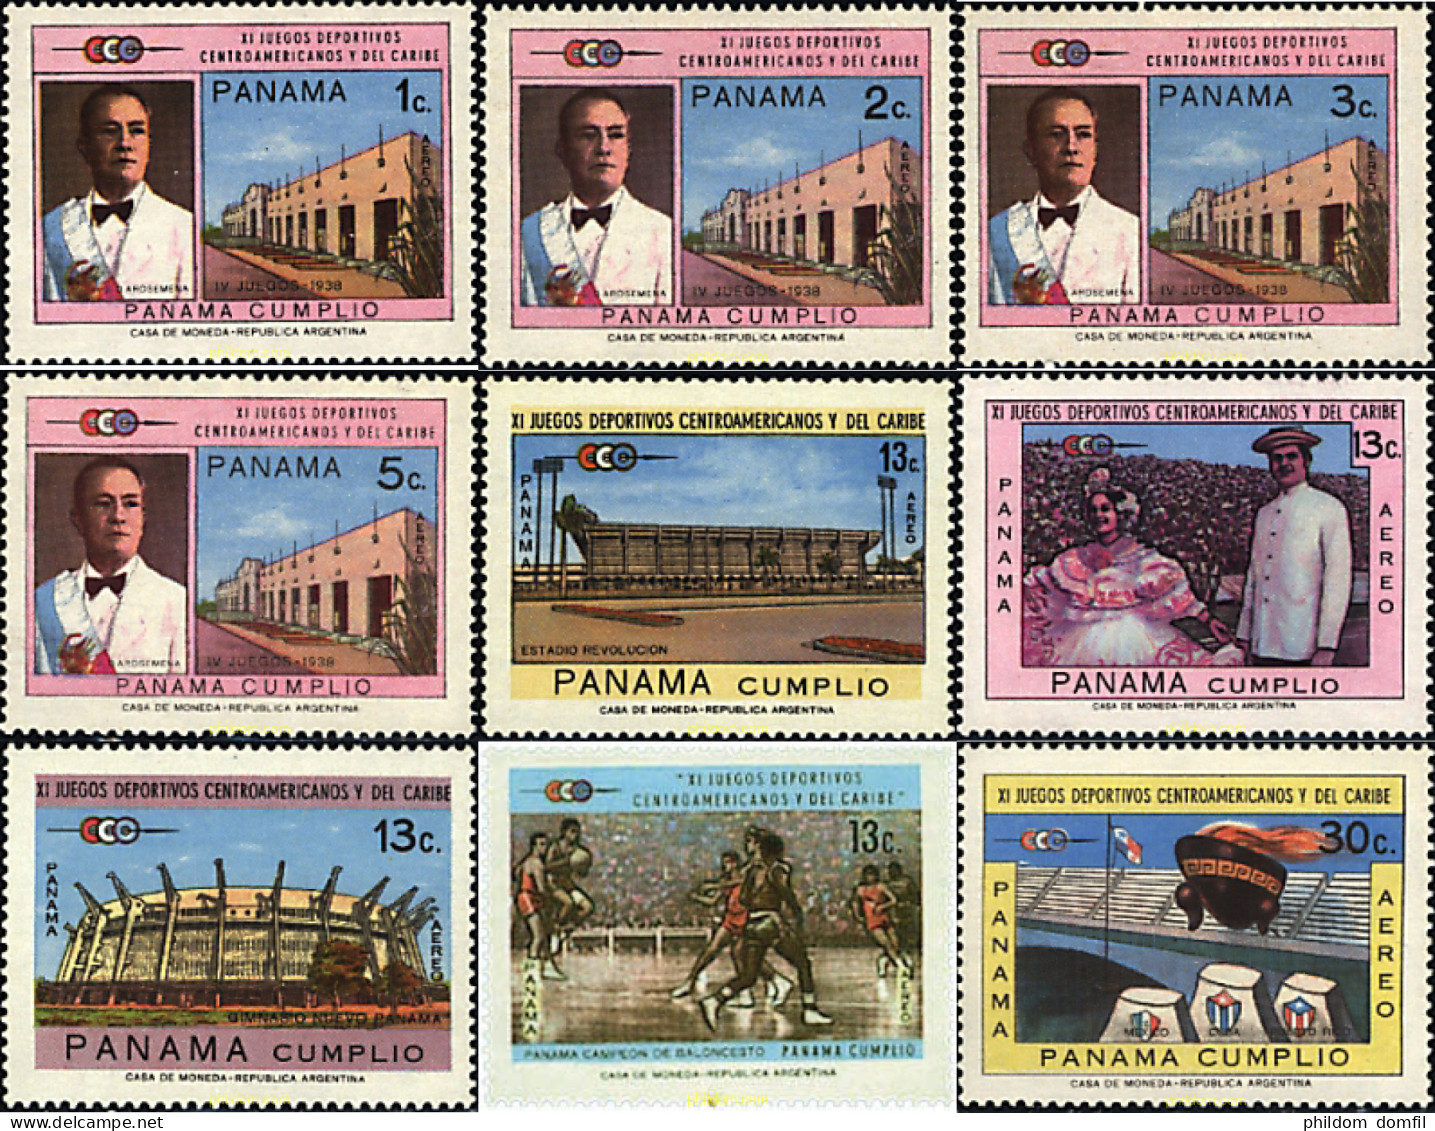 52901 MNH PANAMA 1970 11 JUEGOS DEPORTIVOS CENTROAMERICANOS Y DEL CARIBE - Panama